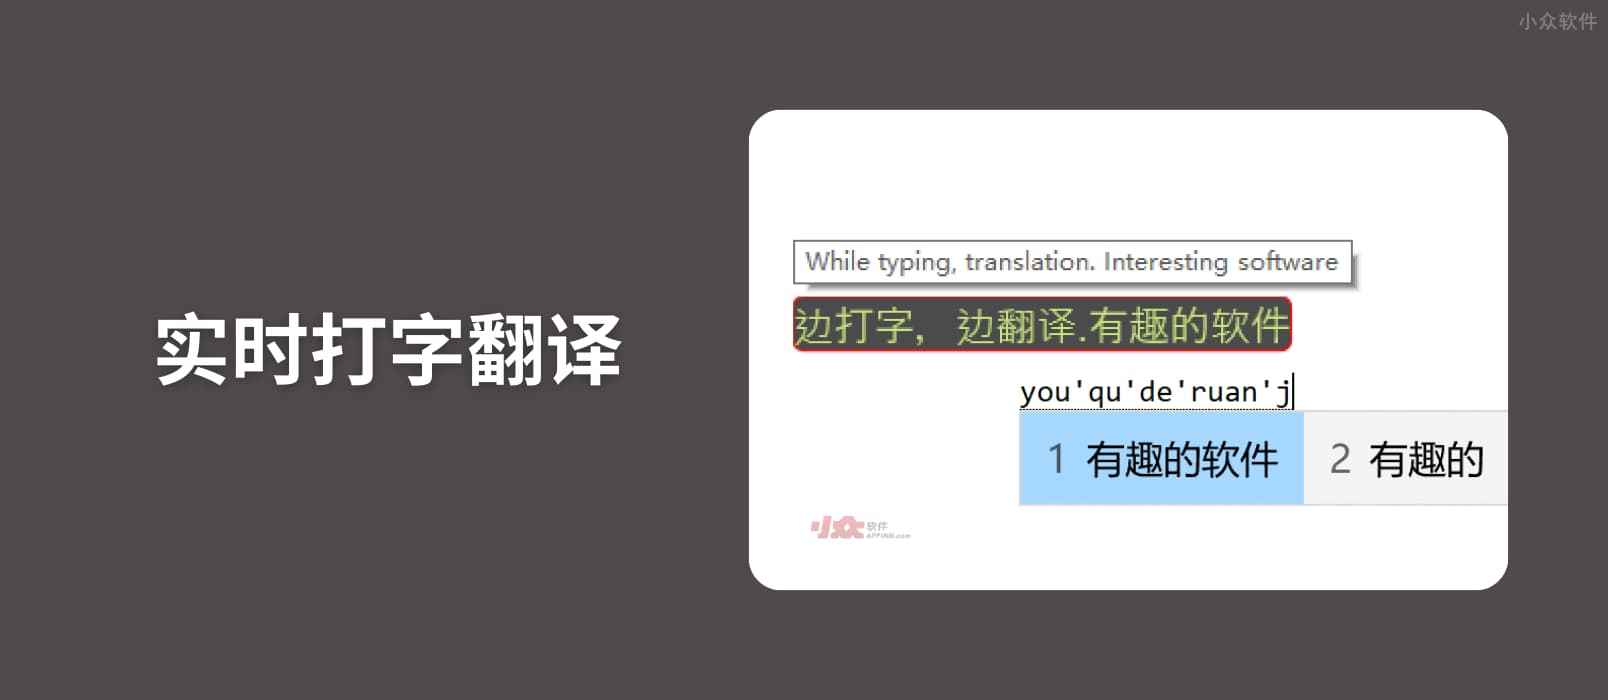 实时打字翻译 - 边打字边翻译，直接输入，支持发音[Windows]